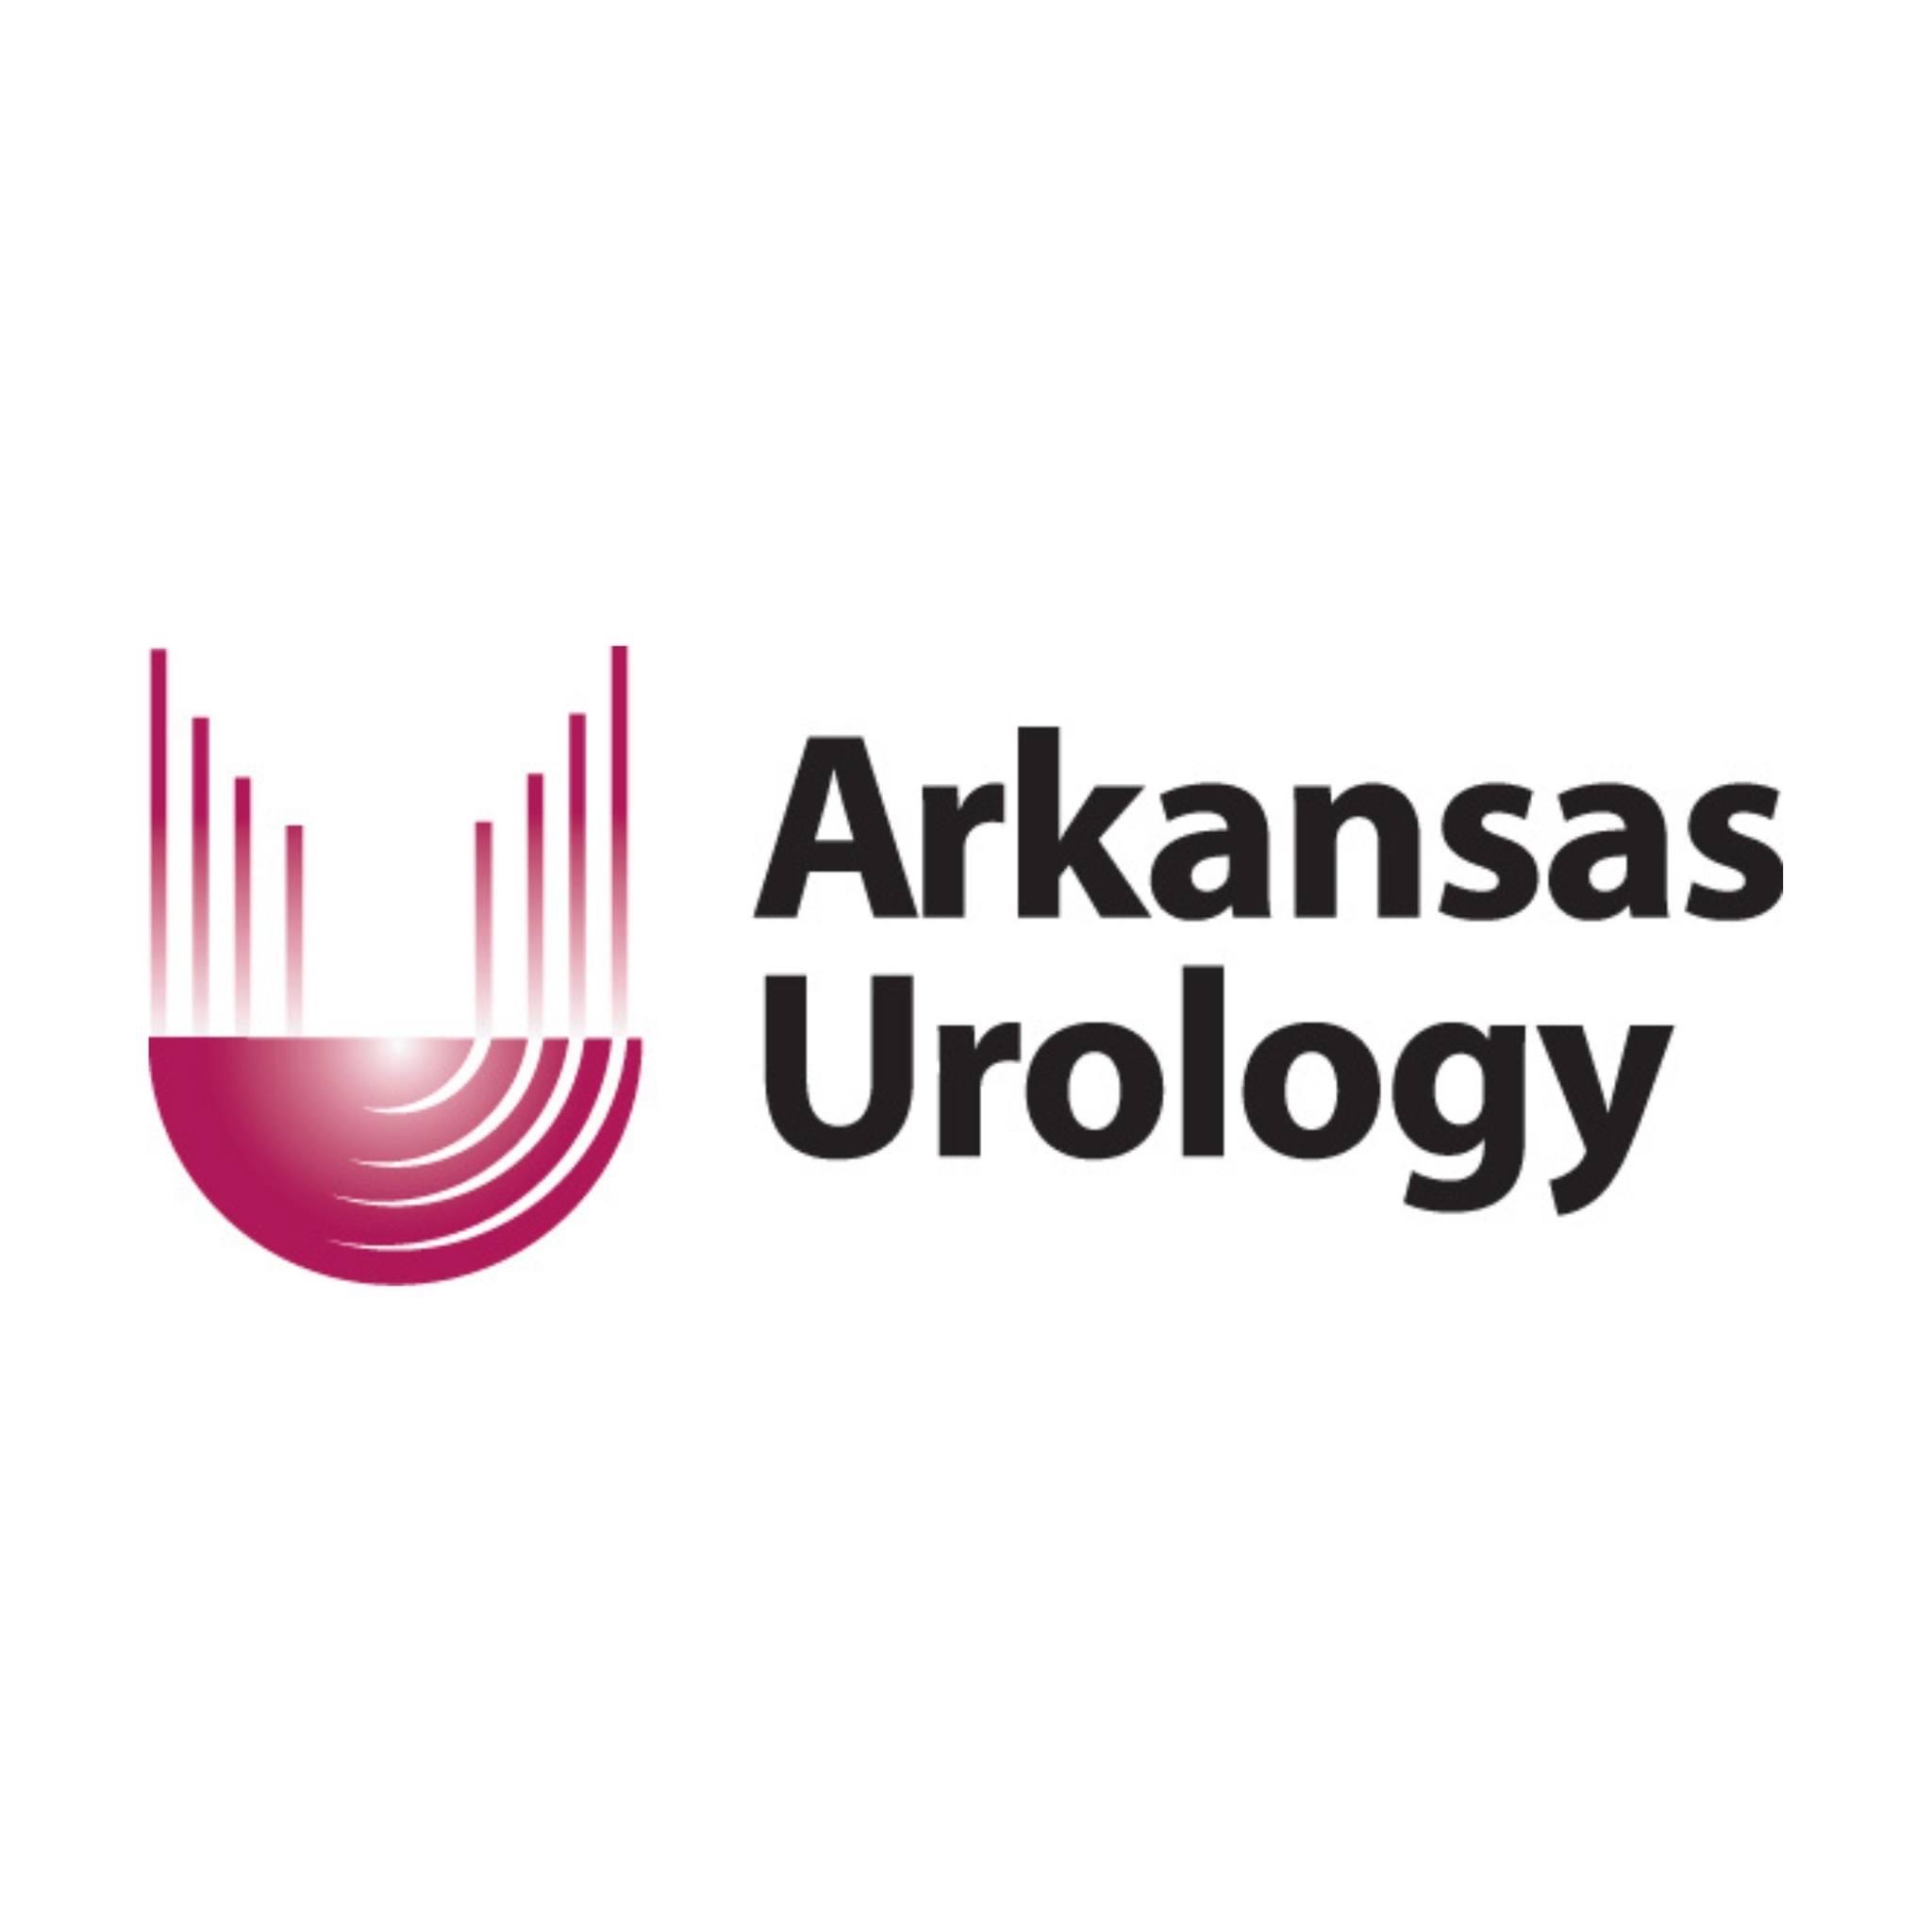 Arkansas Urology